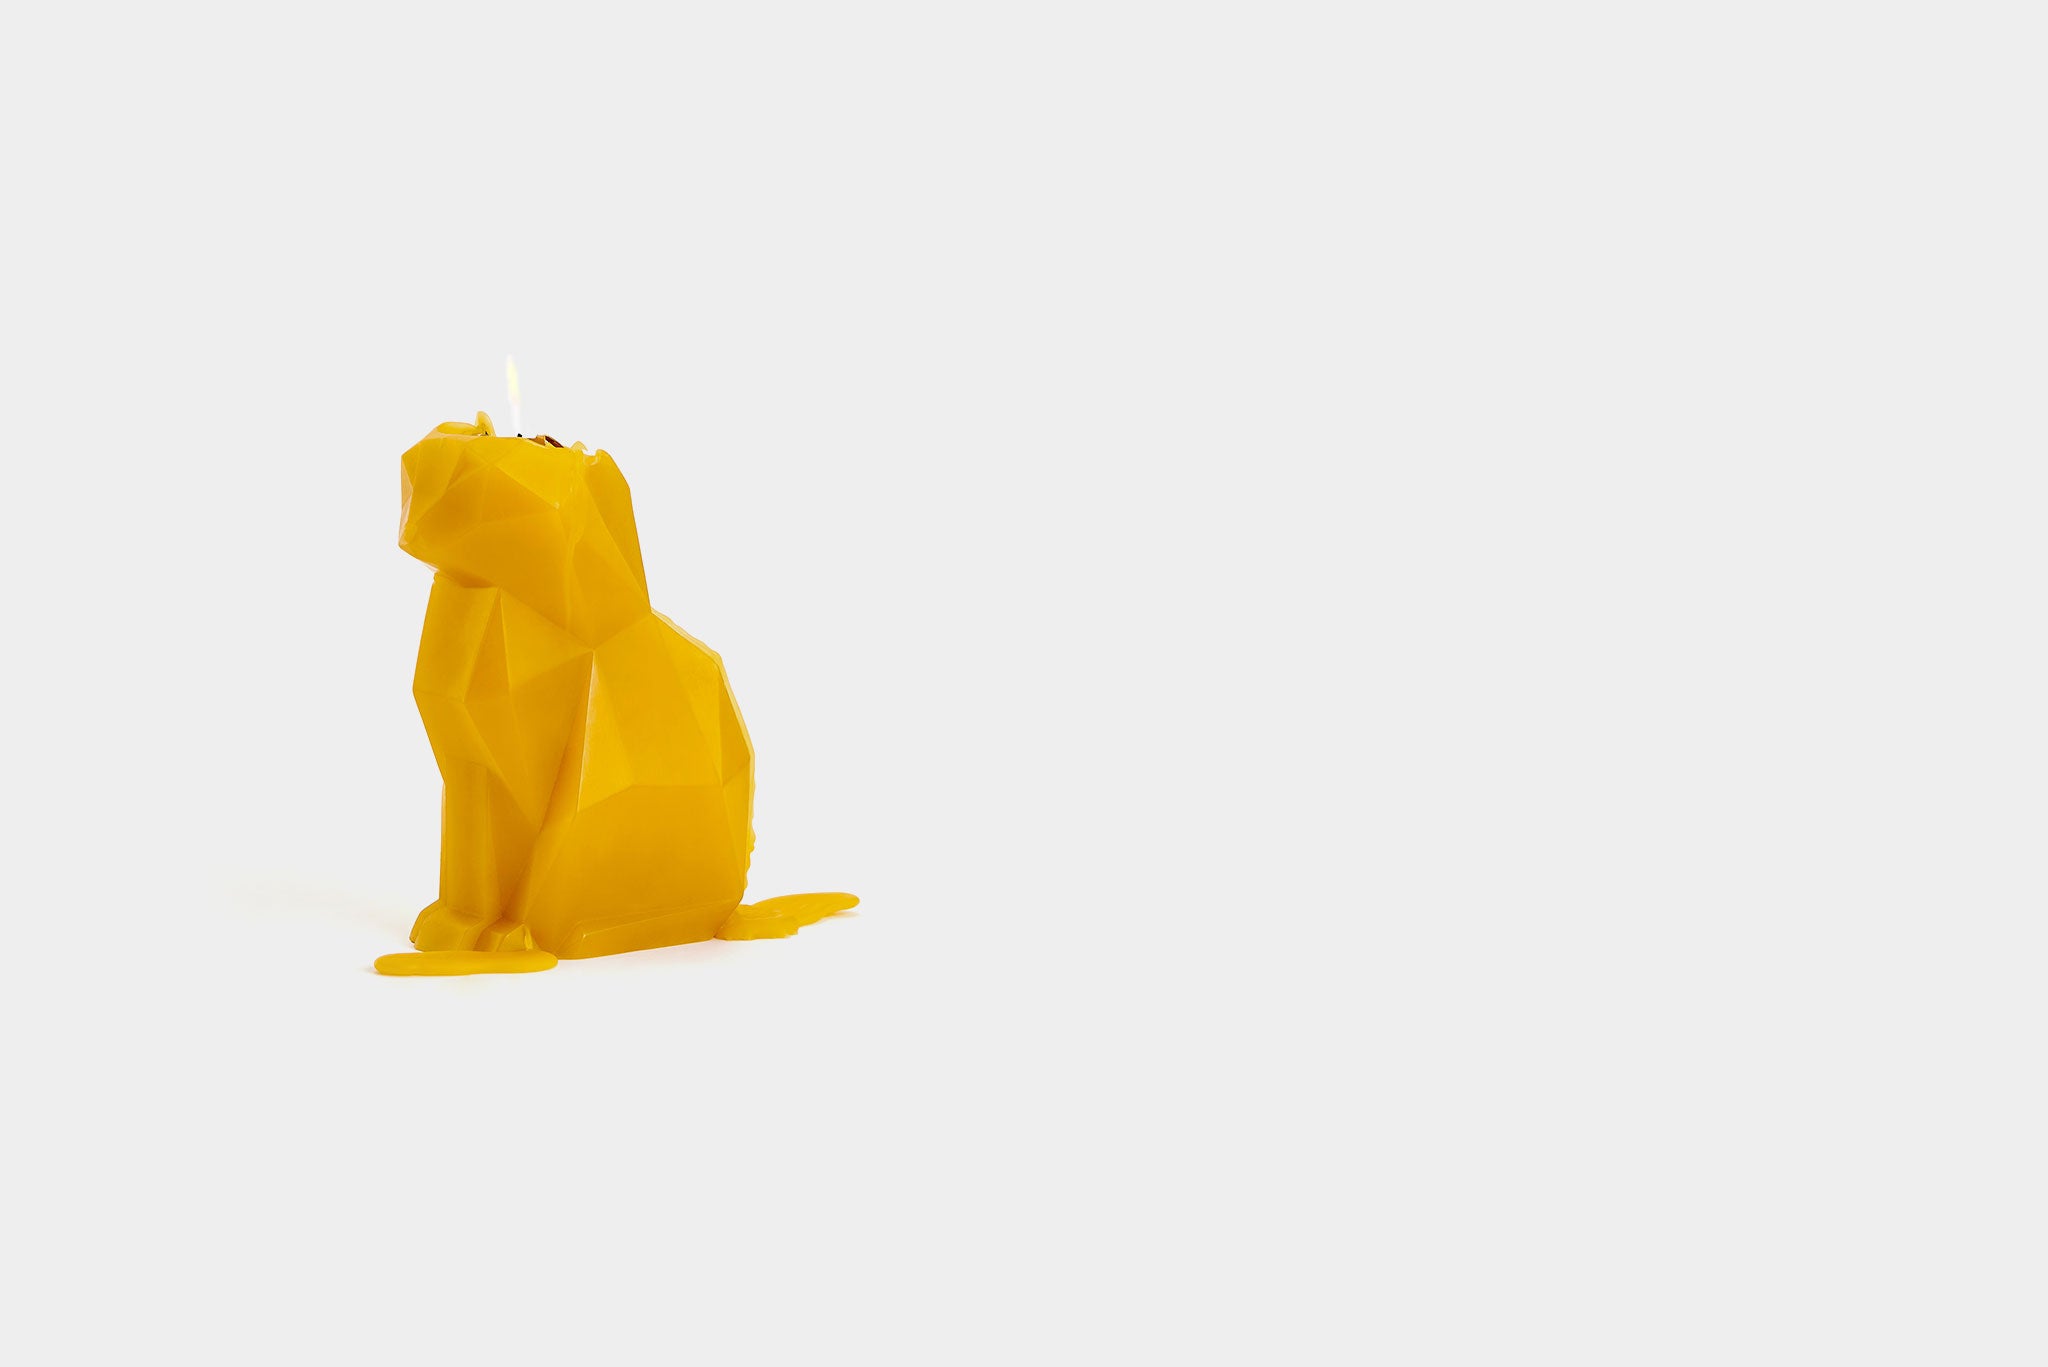 PyroPet Kisa Cat Candle - Mustard Yellow